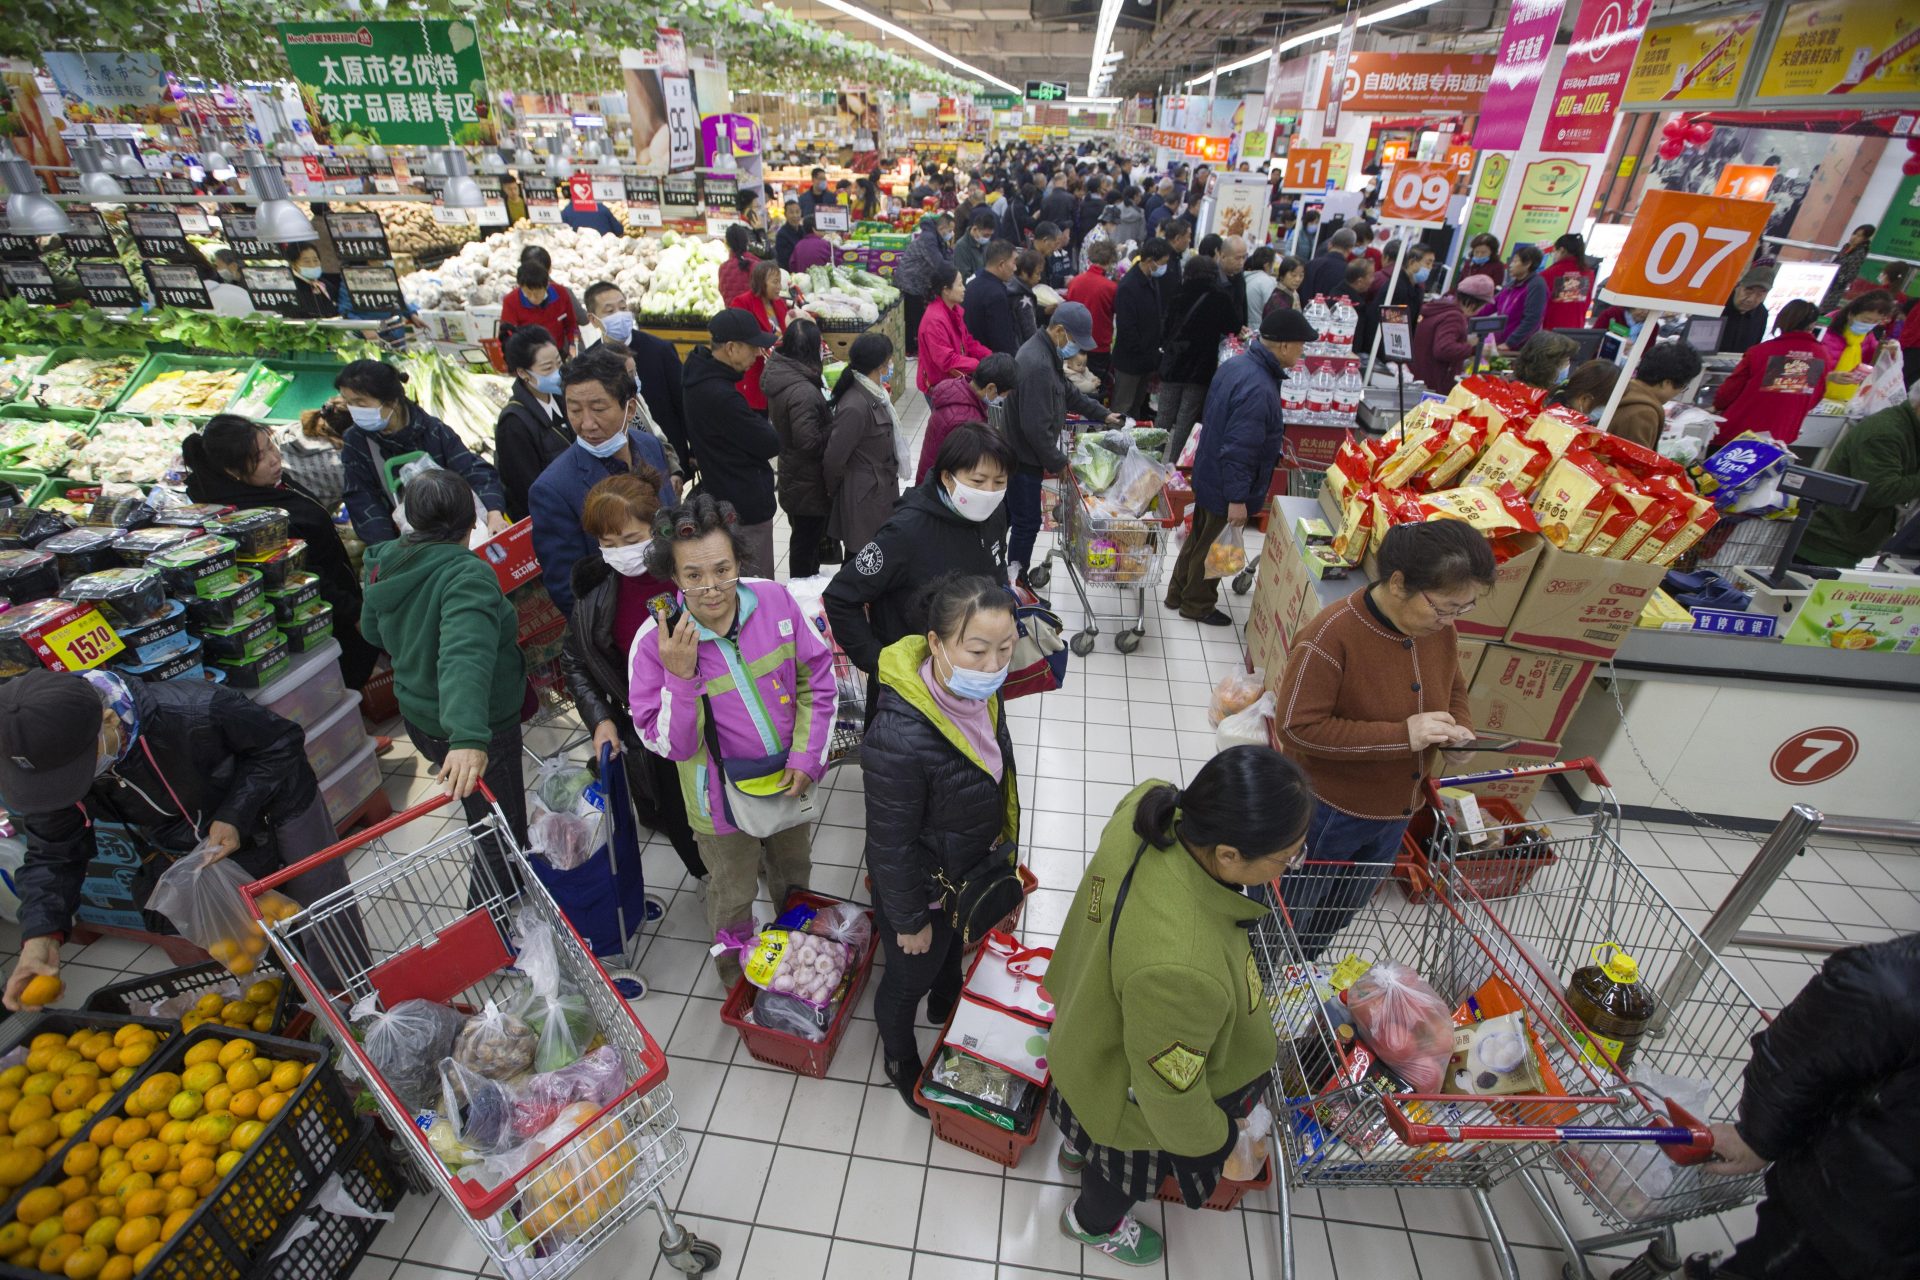 Comment bien choisir sa file de supermarché ? Découvrez la réponse scientifique